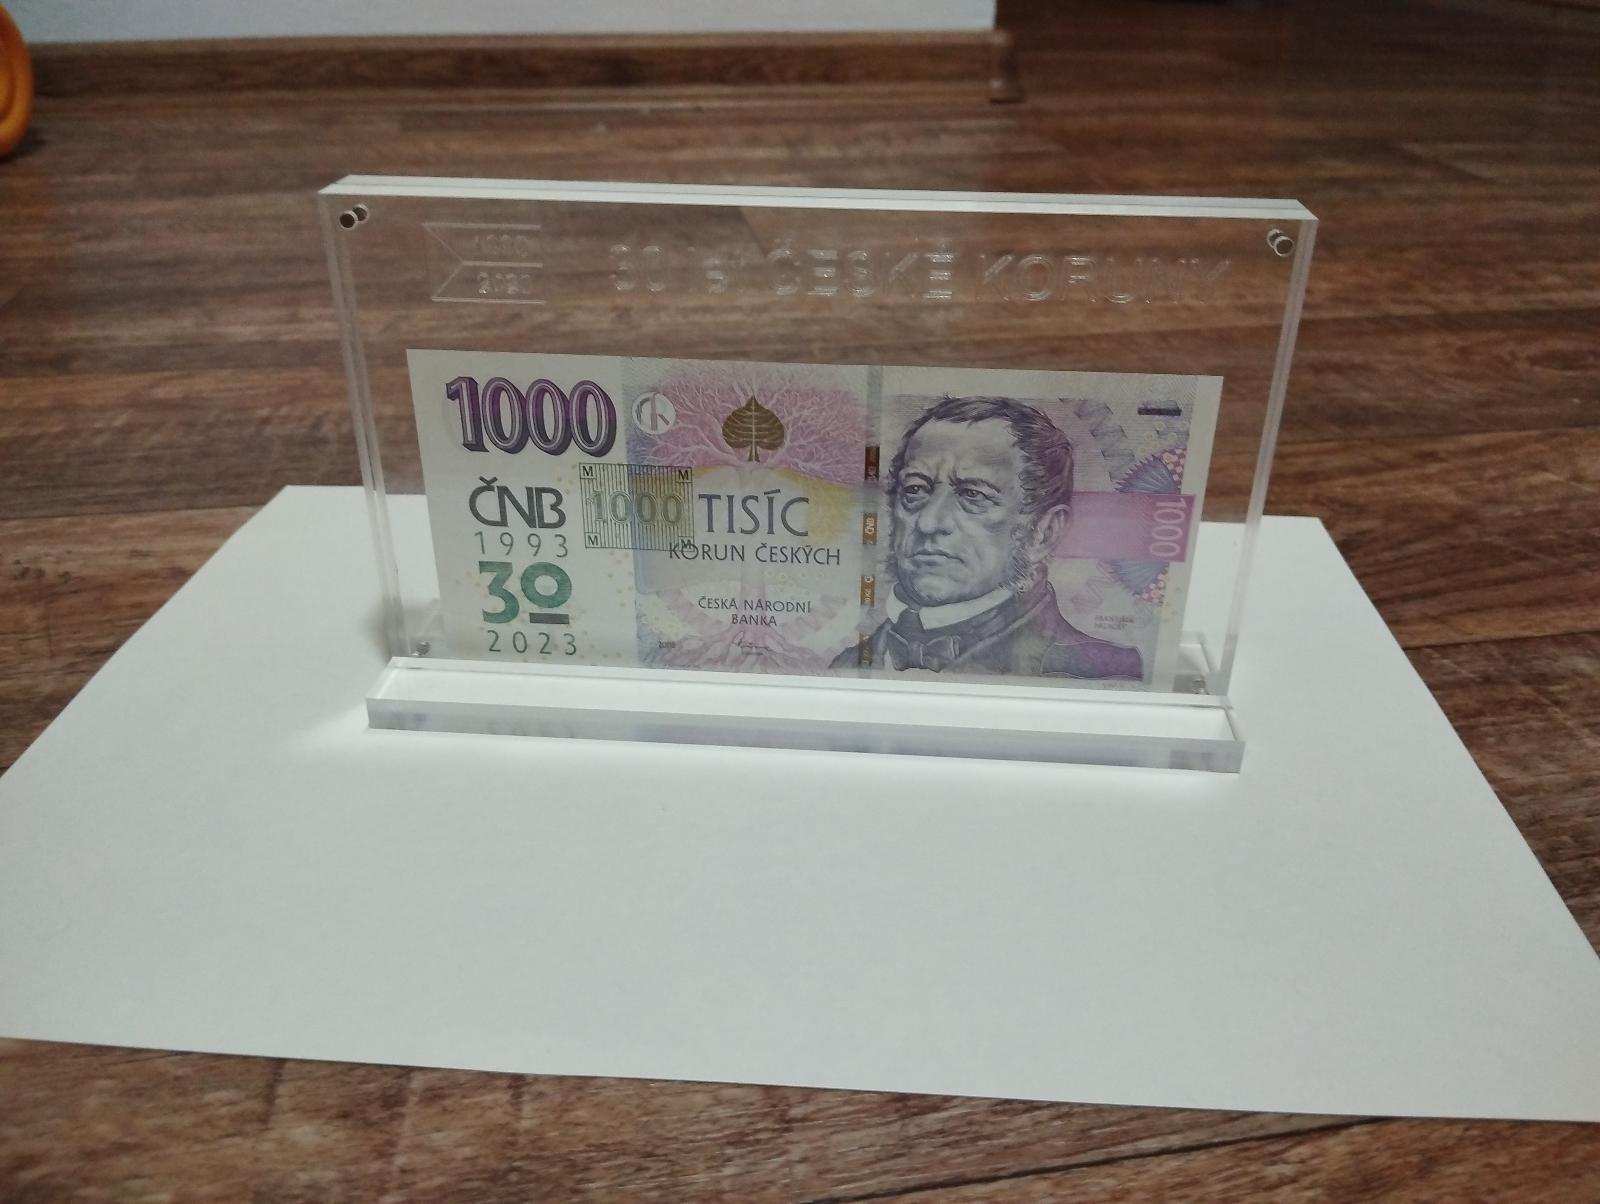 1000Kč s prítlačou v originál rámčeku 30 rokov české koruny - Bankovky